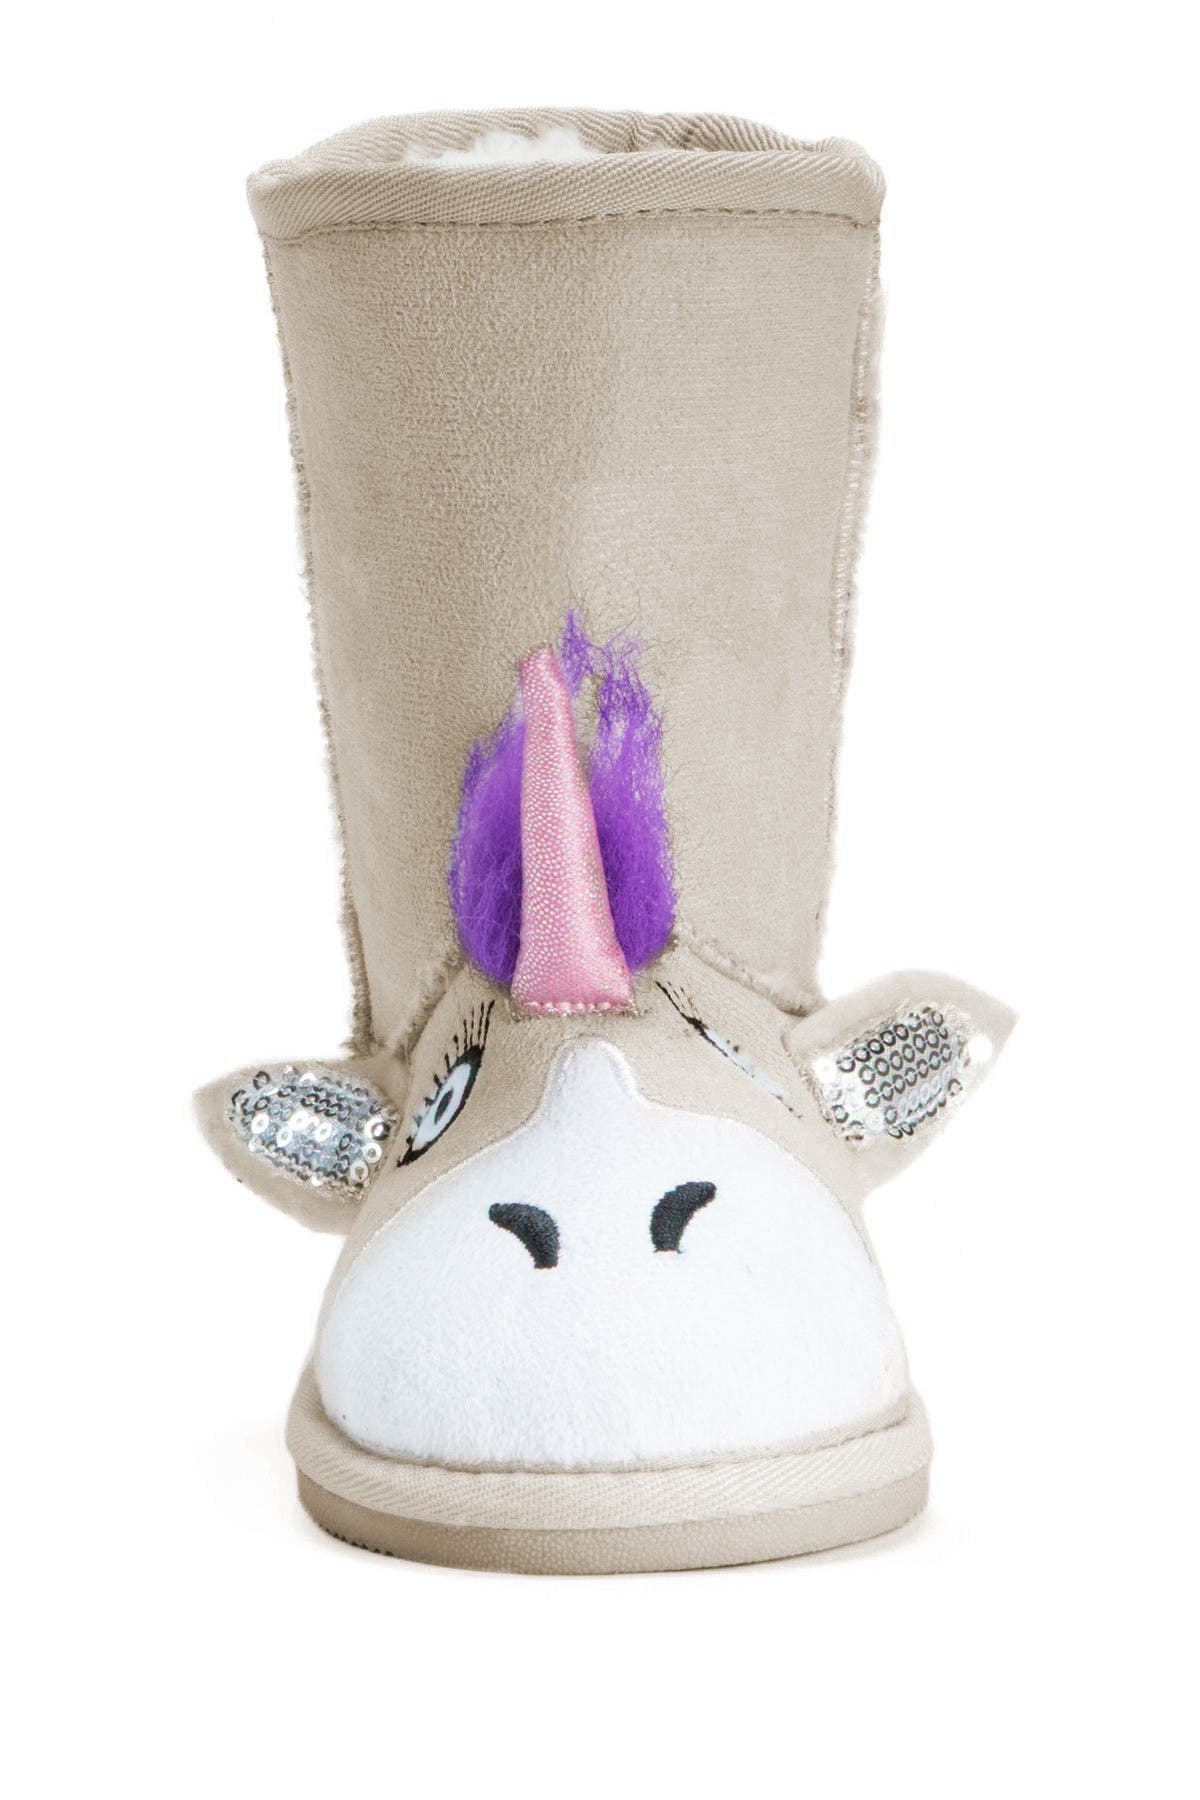 muk luks unicorn boots size 12